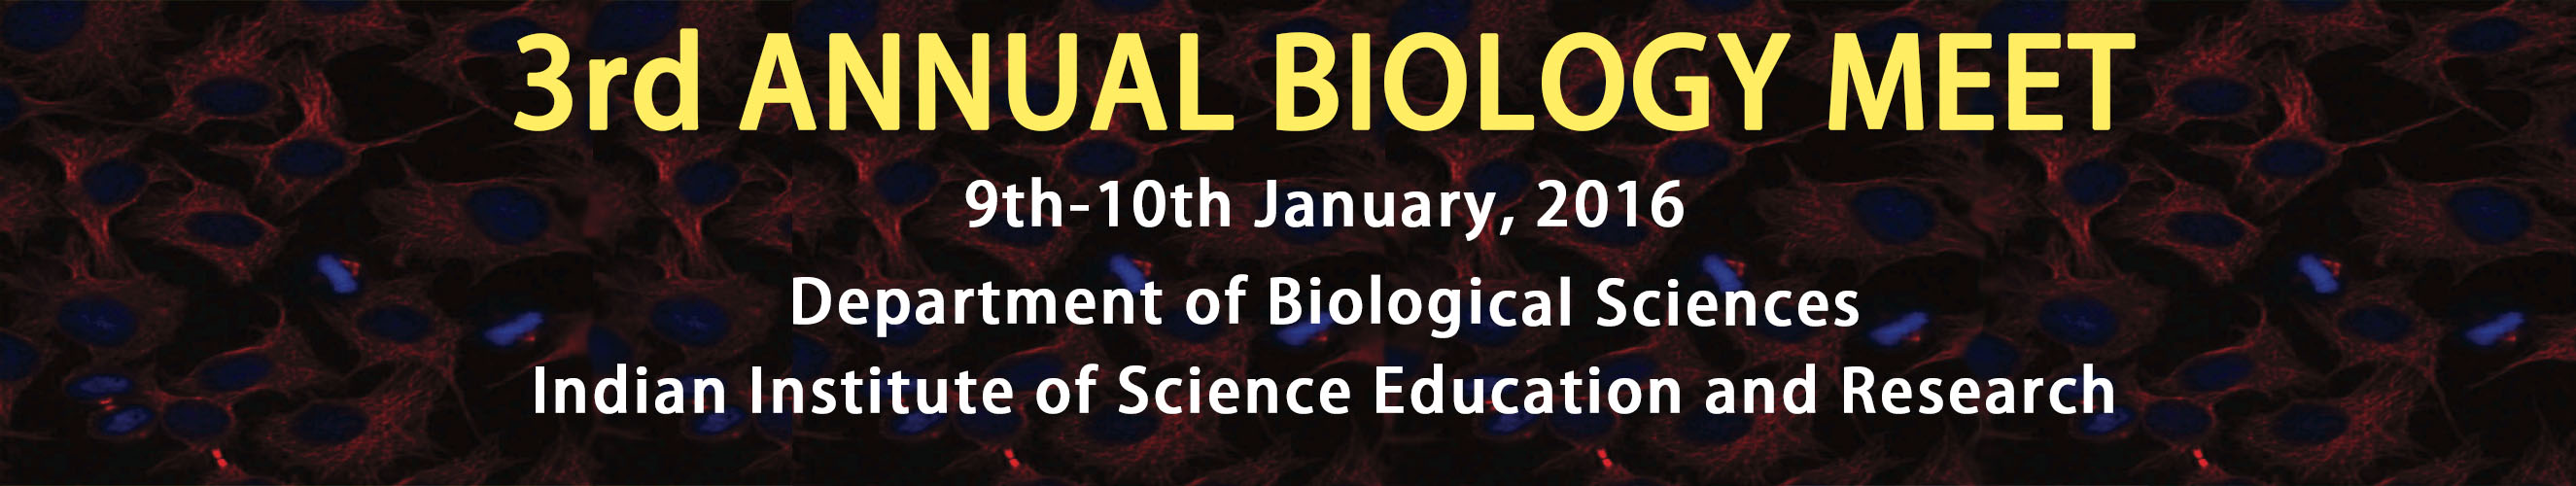 3rd Annual Biology Meet, IISER Bhopal